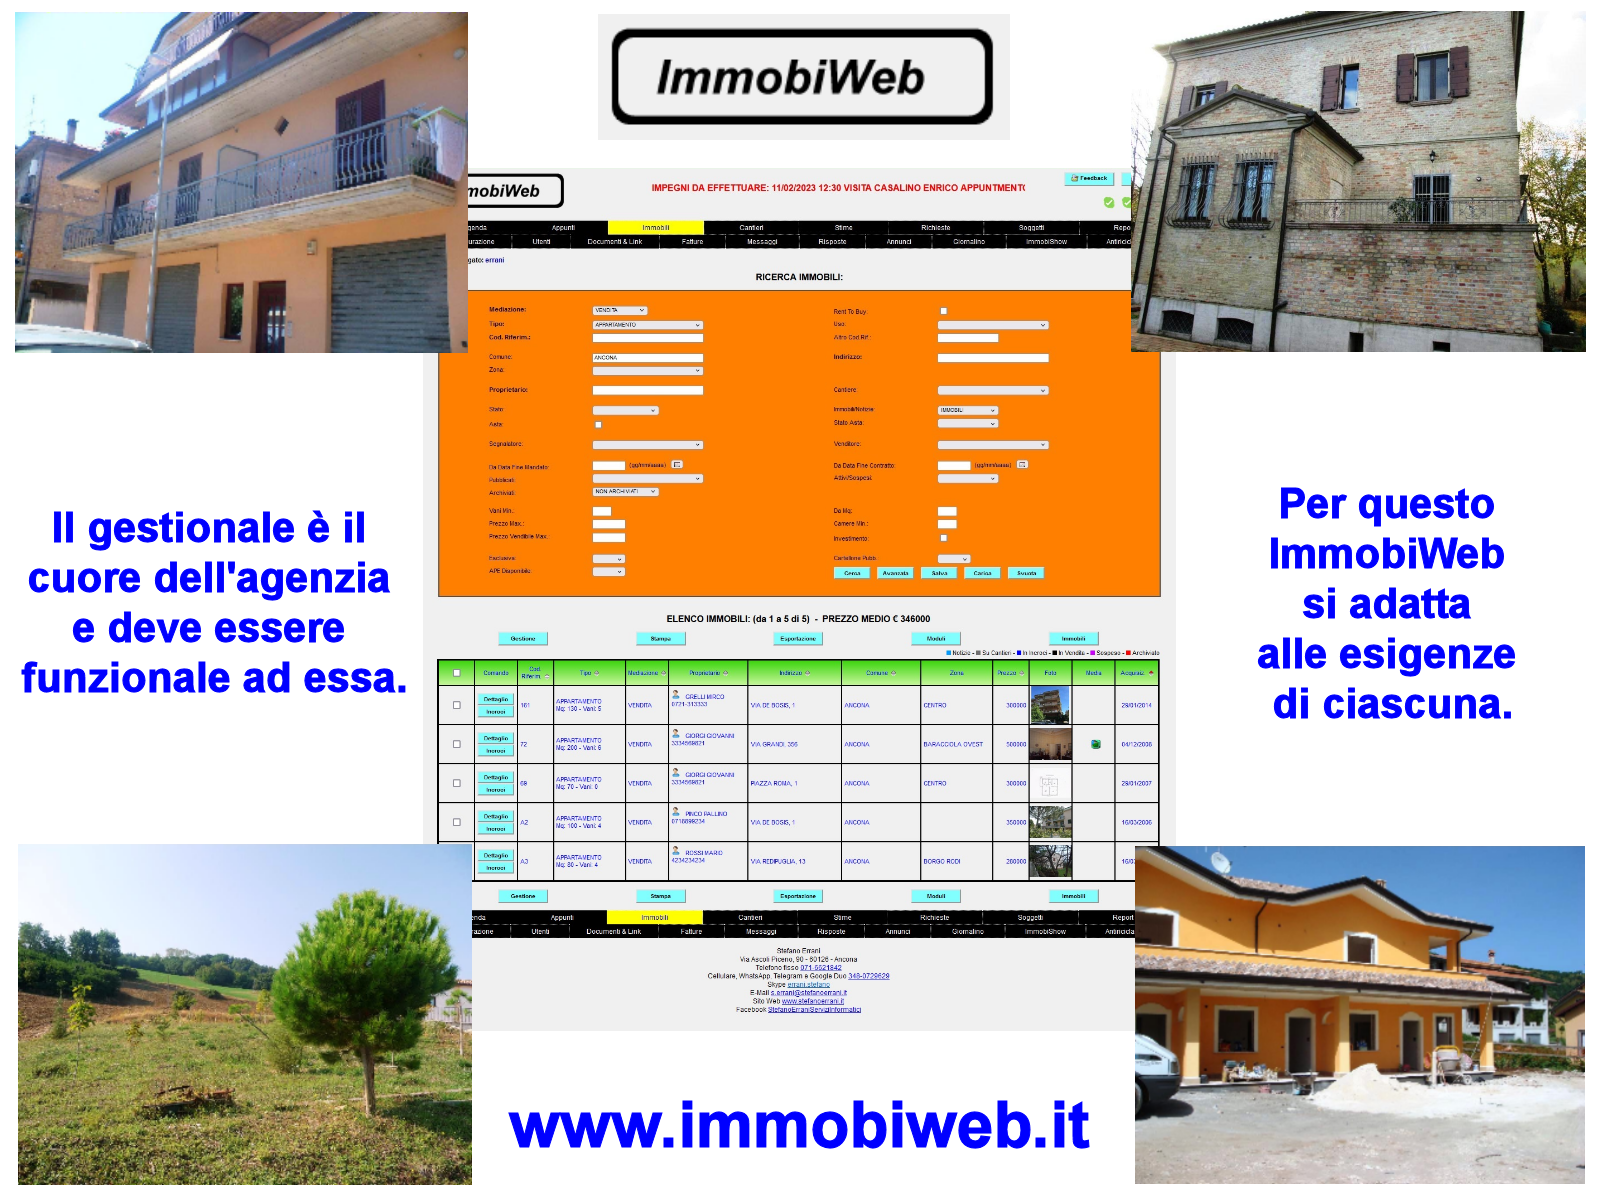 ImmobiWeb, il gestionale per l'agenzia immobiliare che si adatta ad essa